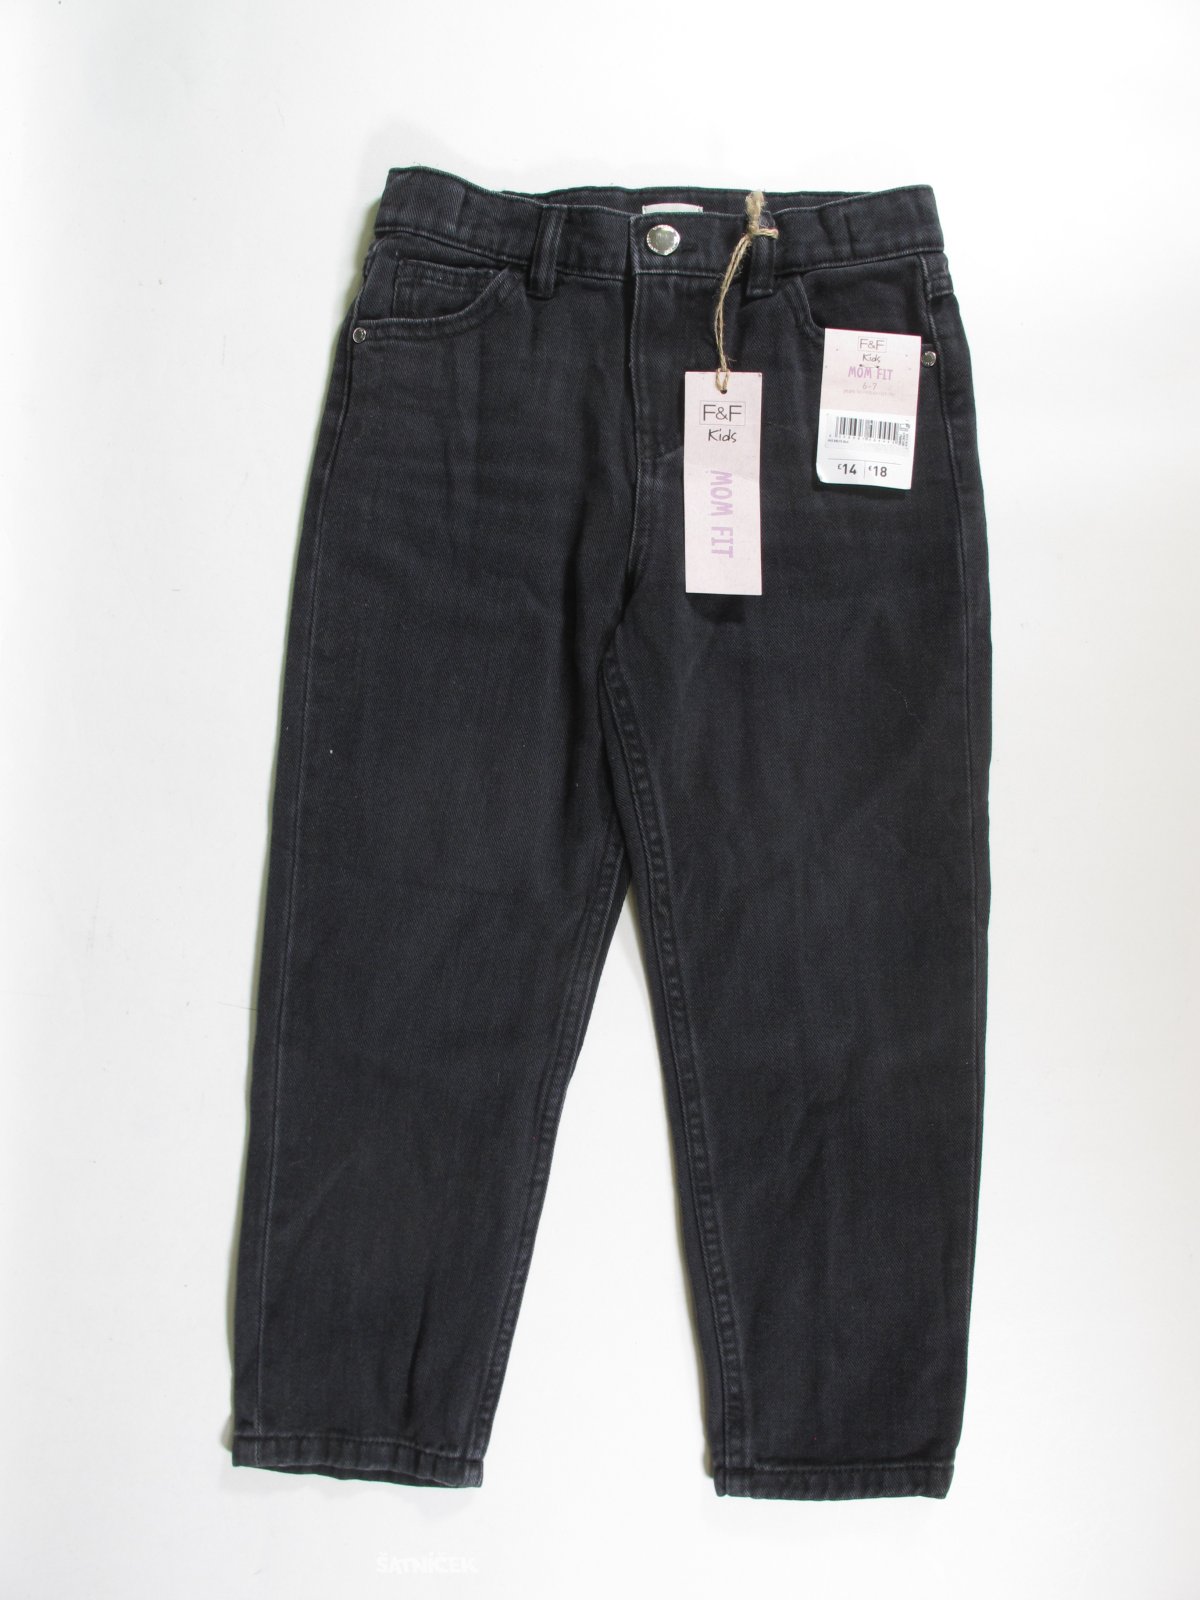 Tmavé džínové kalhoty pro holky outlet